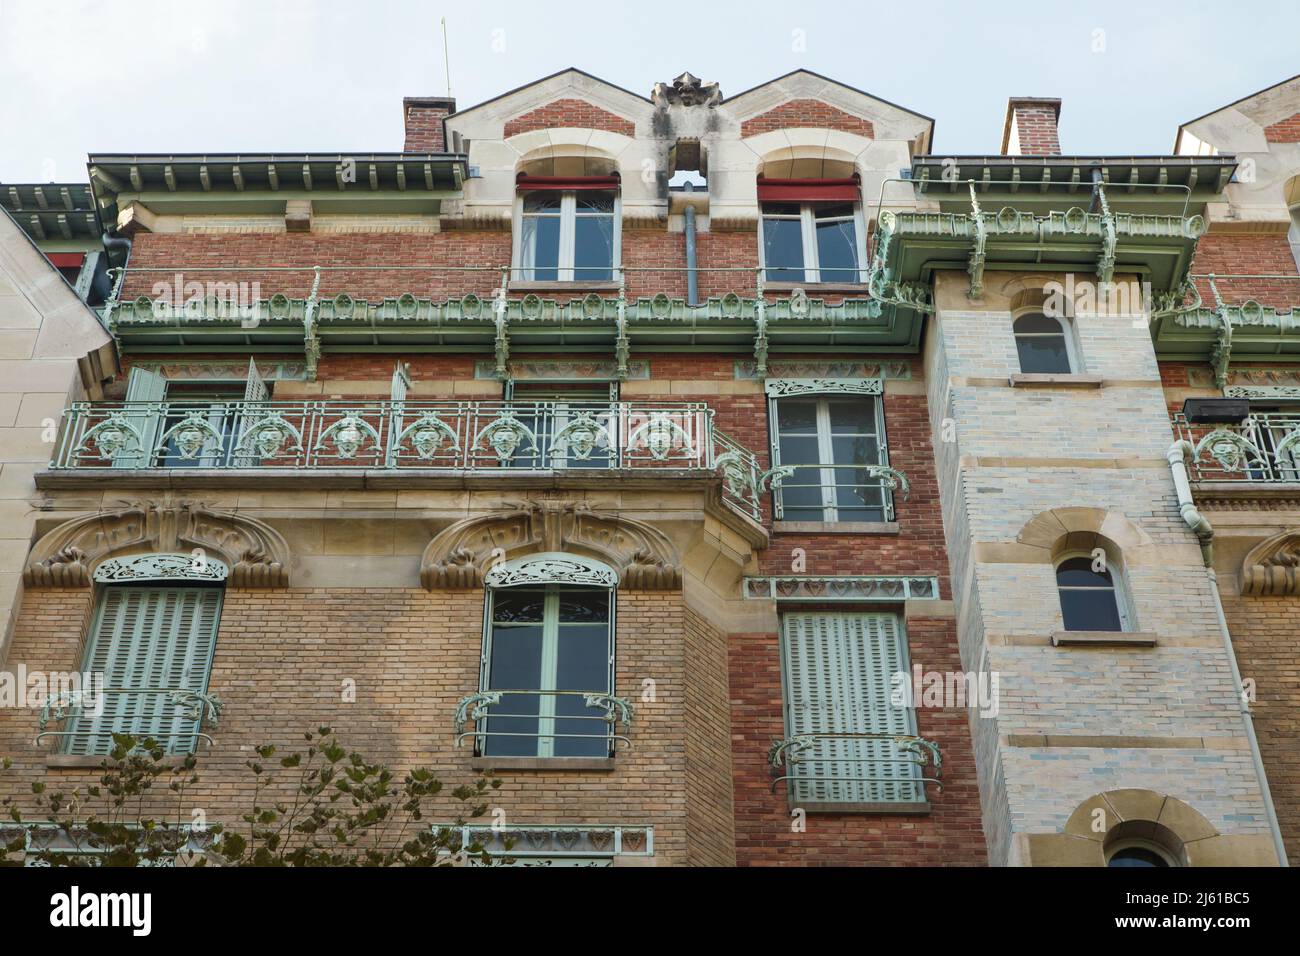 Castel Béranger a Parigi, Francia. L'edificio residenziale noto come Castel Béranger è stato progettato dall'architetto francese Hector Guimard e costruito tra il 1895 e il 1898 in Rue de la Fontaine. E' stato il primo edificio di Parigi nello stile noto come Art Nouveau. Foto Stock